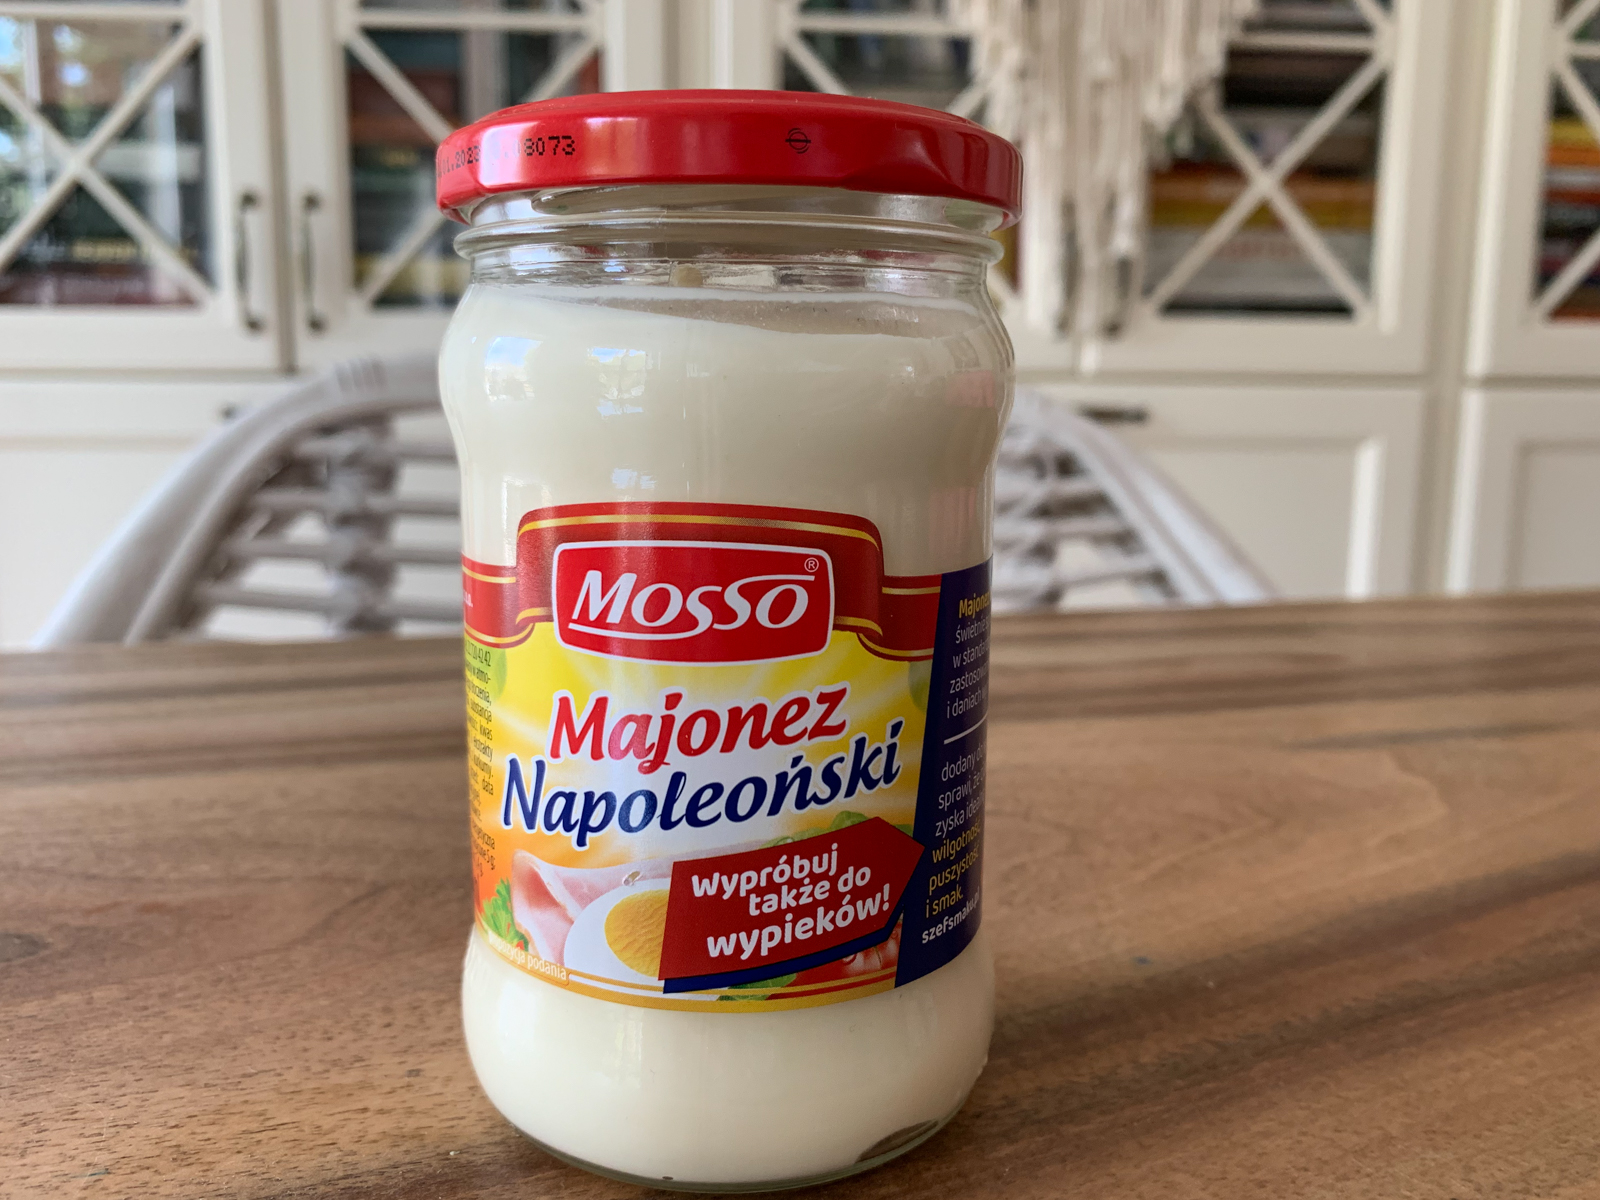 test majonezow krytyka kulinarna